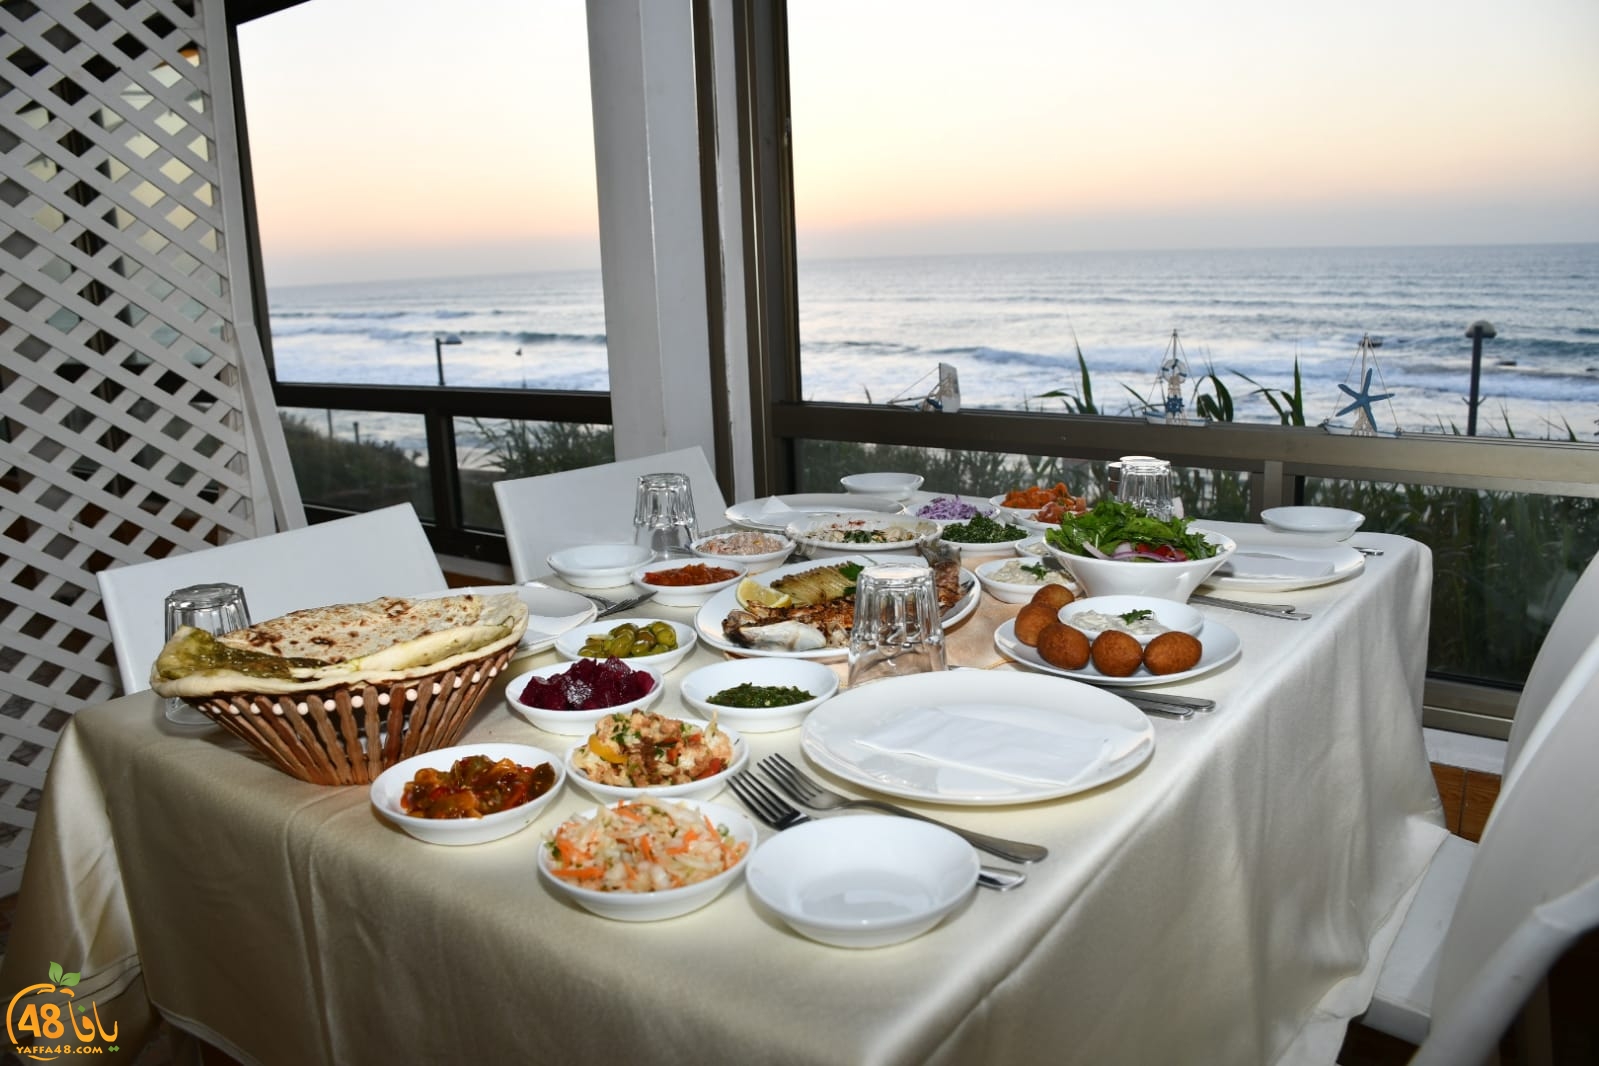  وجبات سمكية فاخرة بانتظاركم في مطعم عروس البحر بيافا